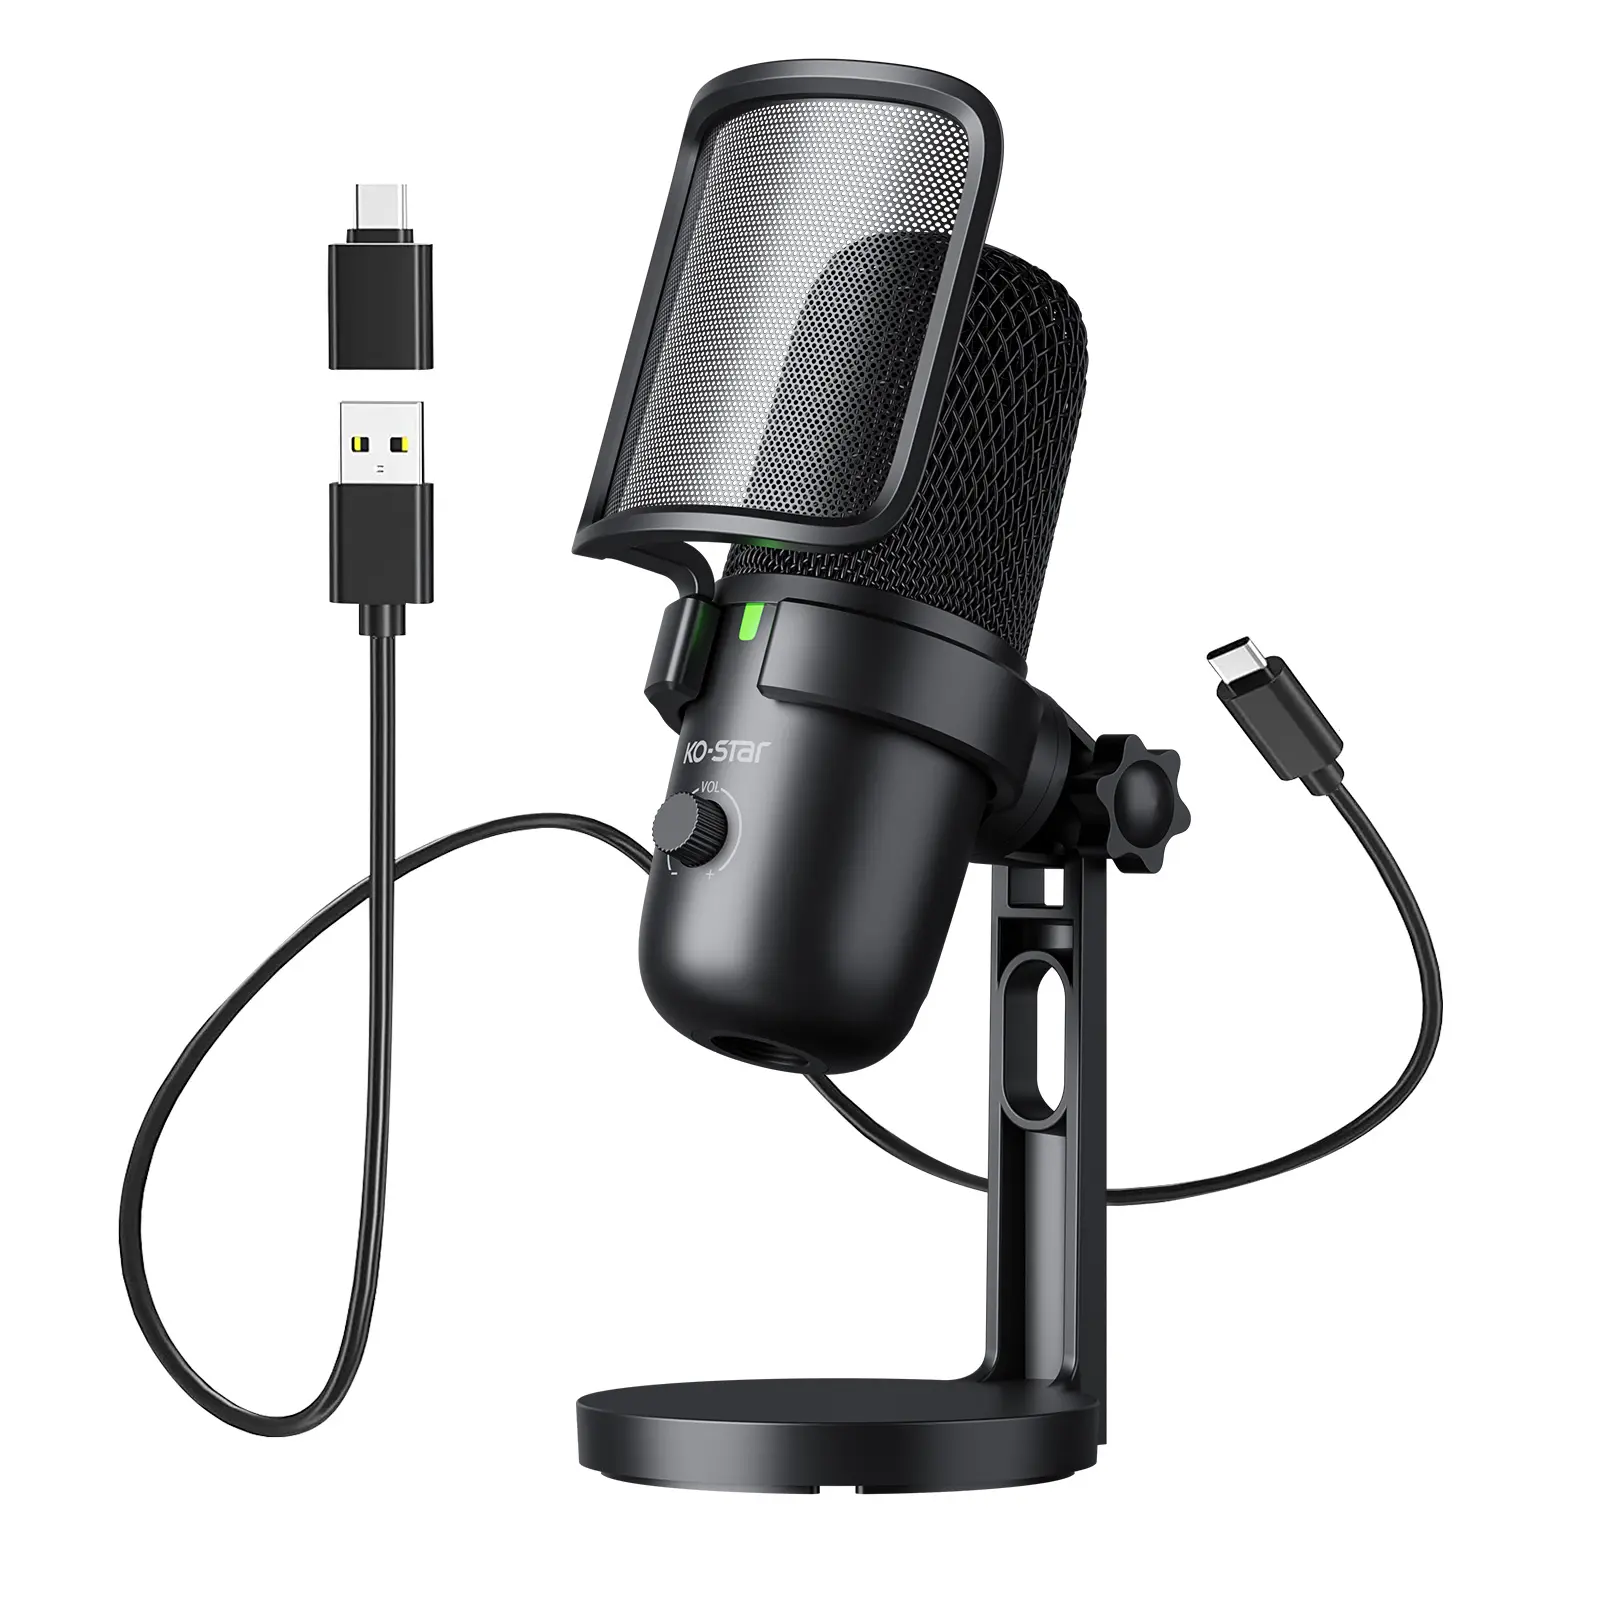 สตูดิโอบันทึกระดับมืออาชีพไมโครโฟน USB การสัมภาษณ์คอนเดนเซอร์ทุกทิศทางพอดคาสต์ปลั๊กเล่นไมโครโฟน